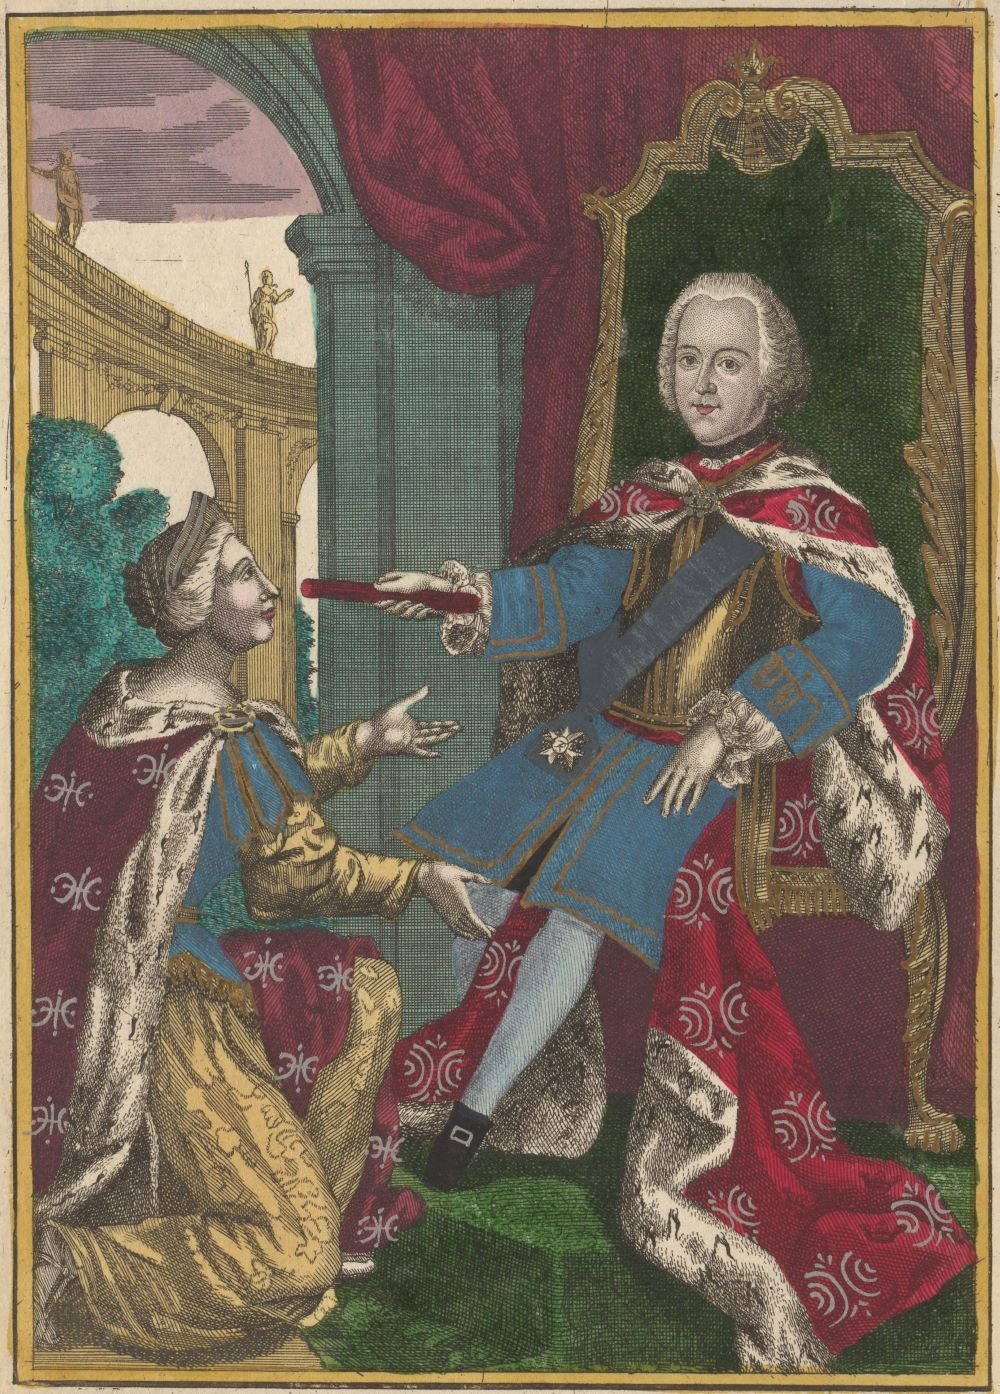 Färglagd gravyr föreställande en man i prakfulla kläder och vit peruk som sitter på en tron, på knä framför honom står Moder Svea med upplyfta händer. 